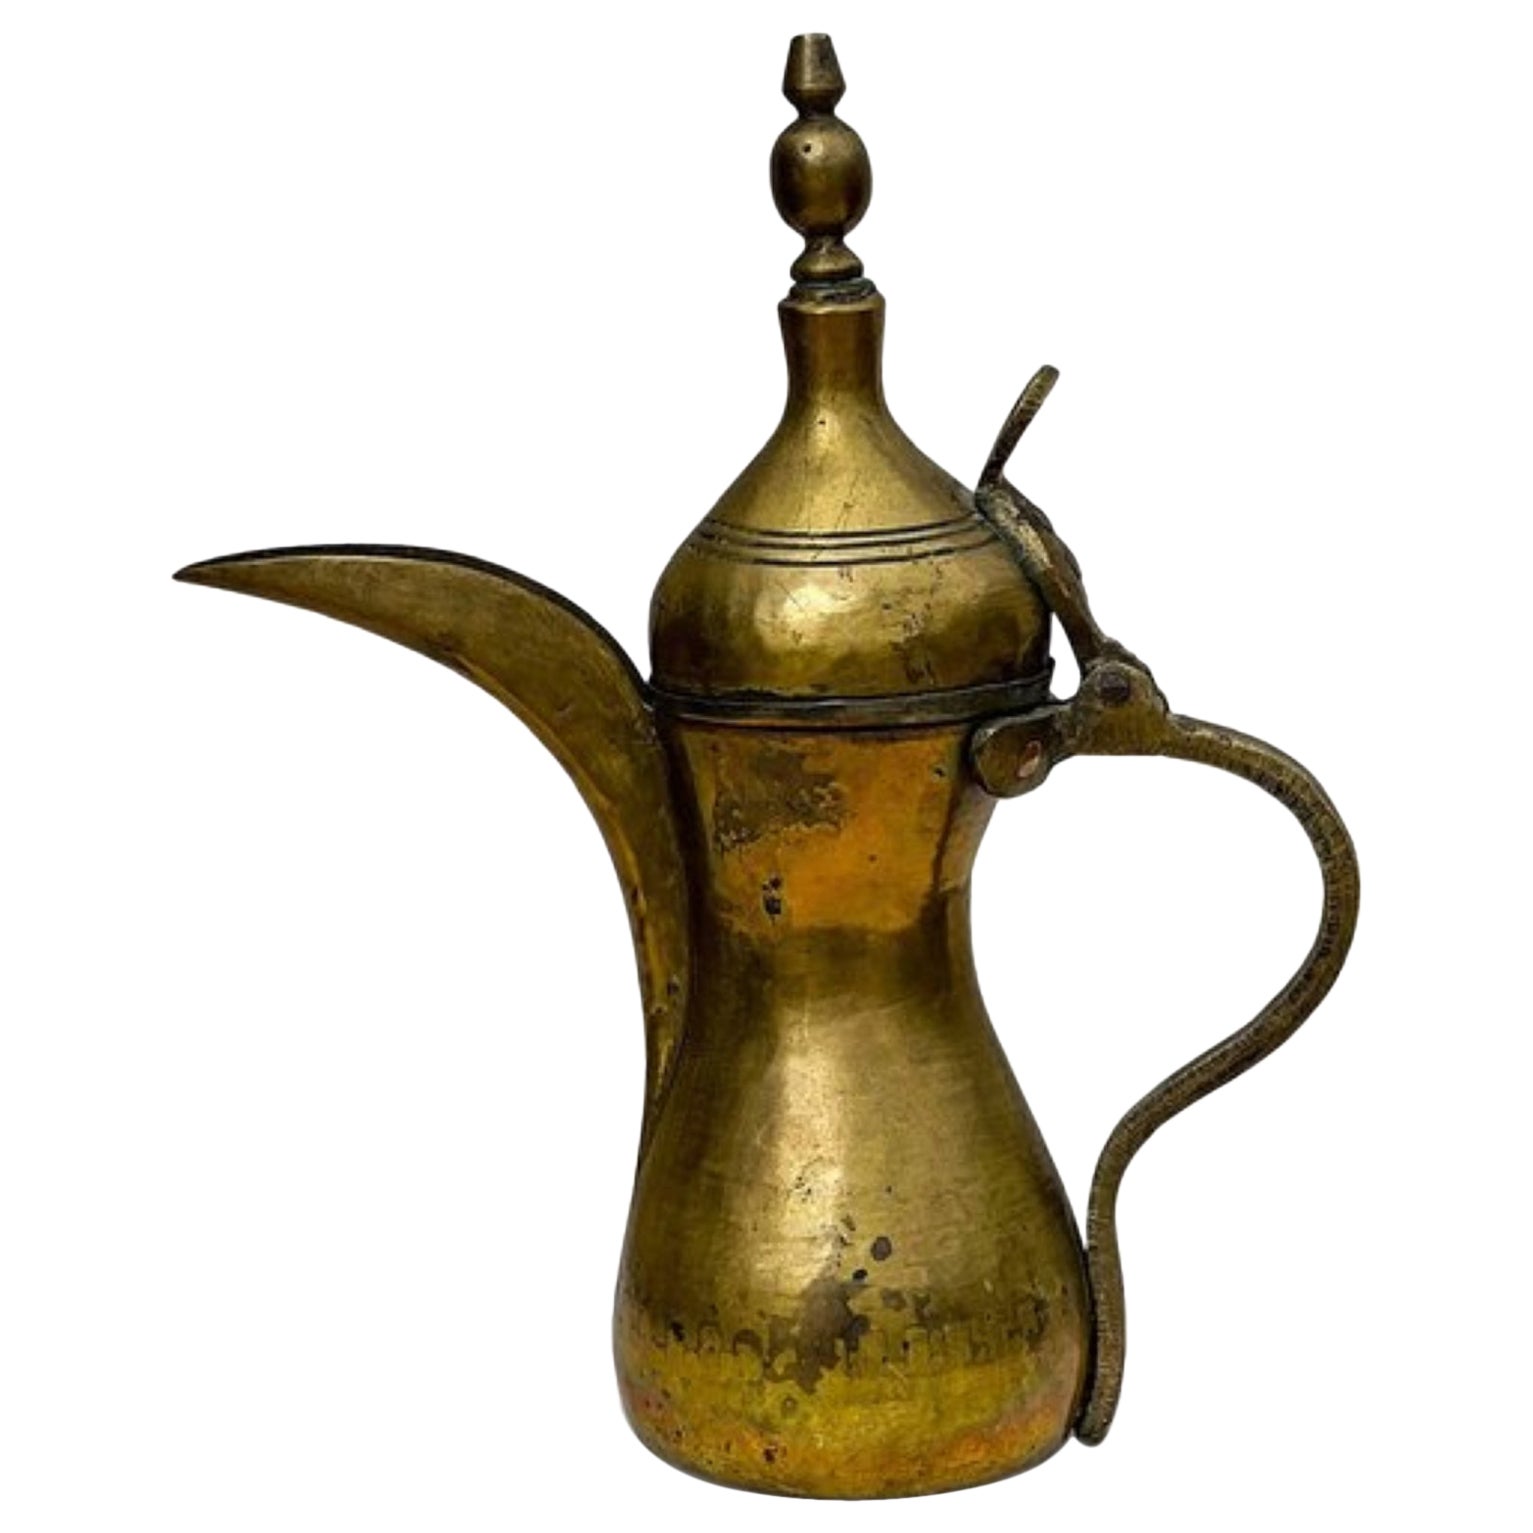 Ancienne cafetière arabe Dallah en laiton du Moyen-Orient